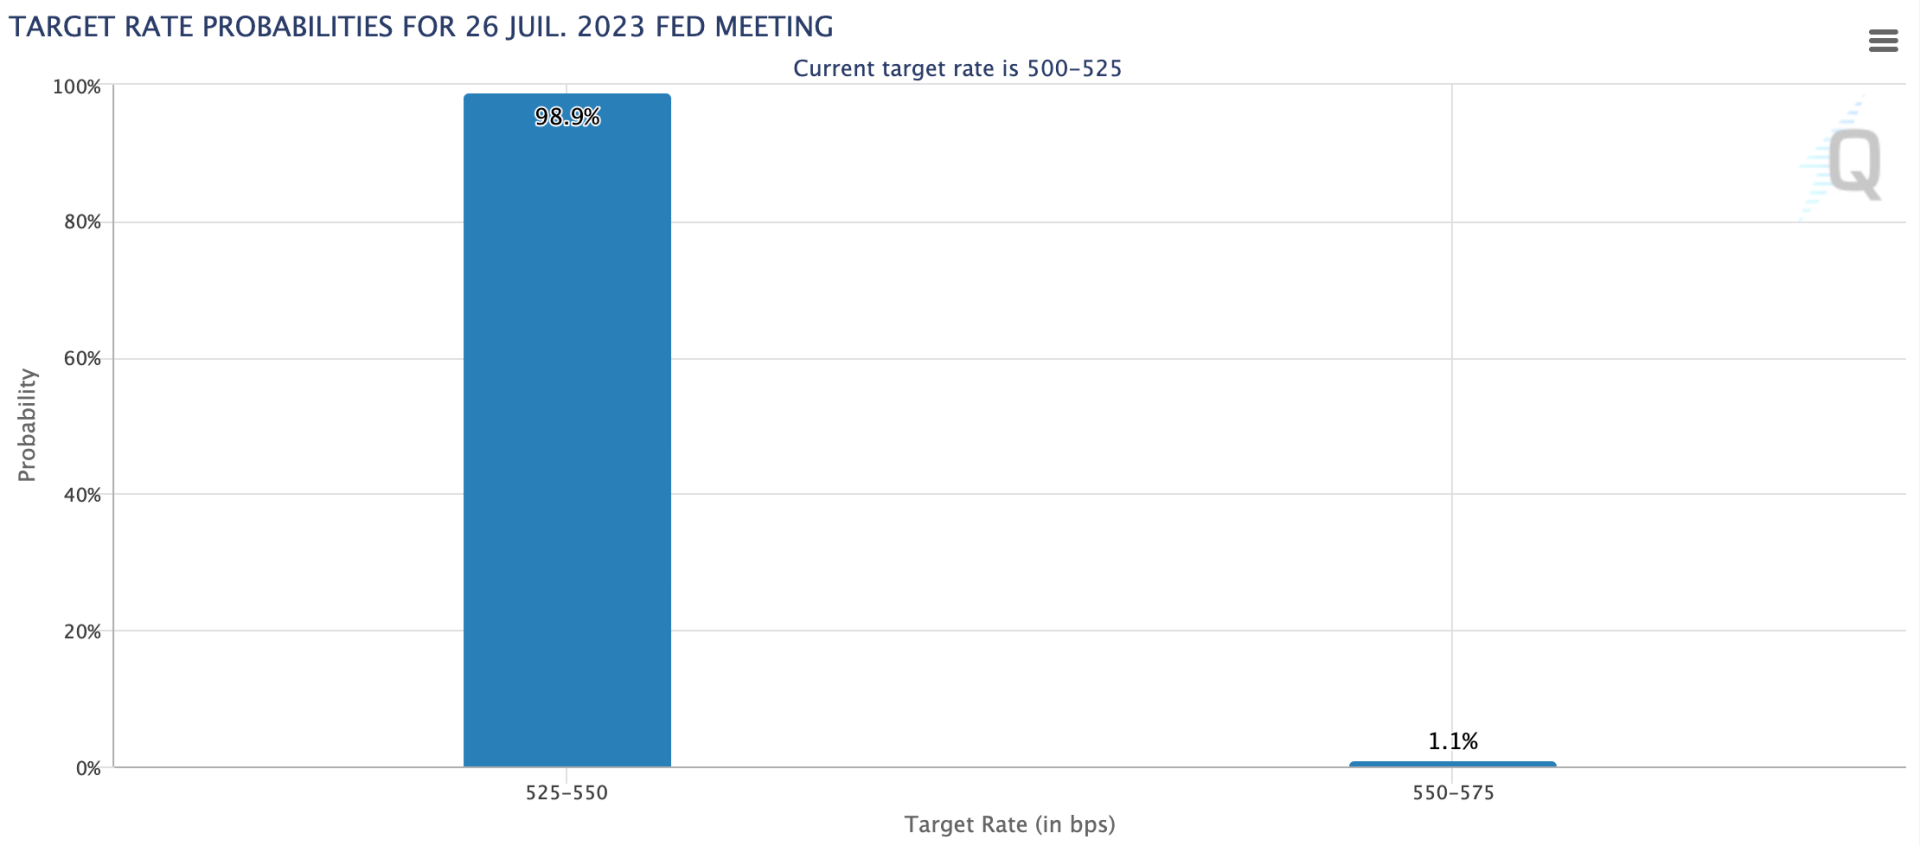 Les probabilités sont orientées vers une nouvelle hausse de 25 points de base lors de la prochaine réunion FOMC - 26 juillet 2023. 